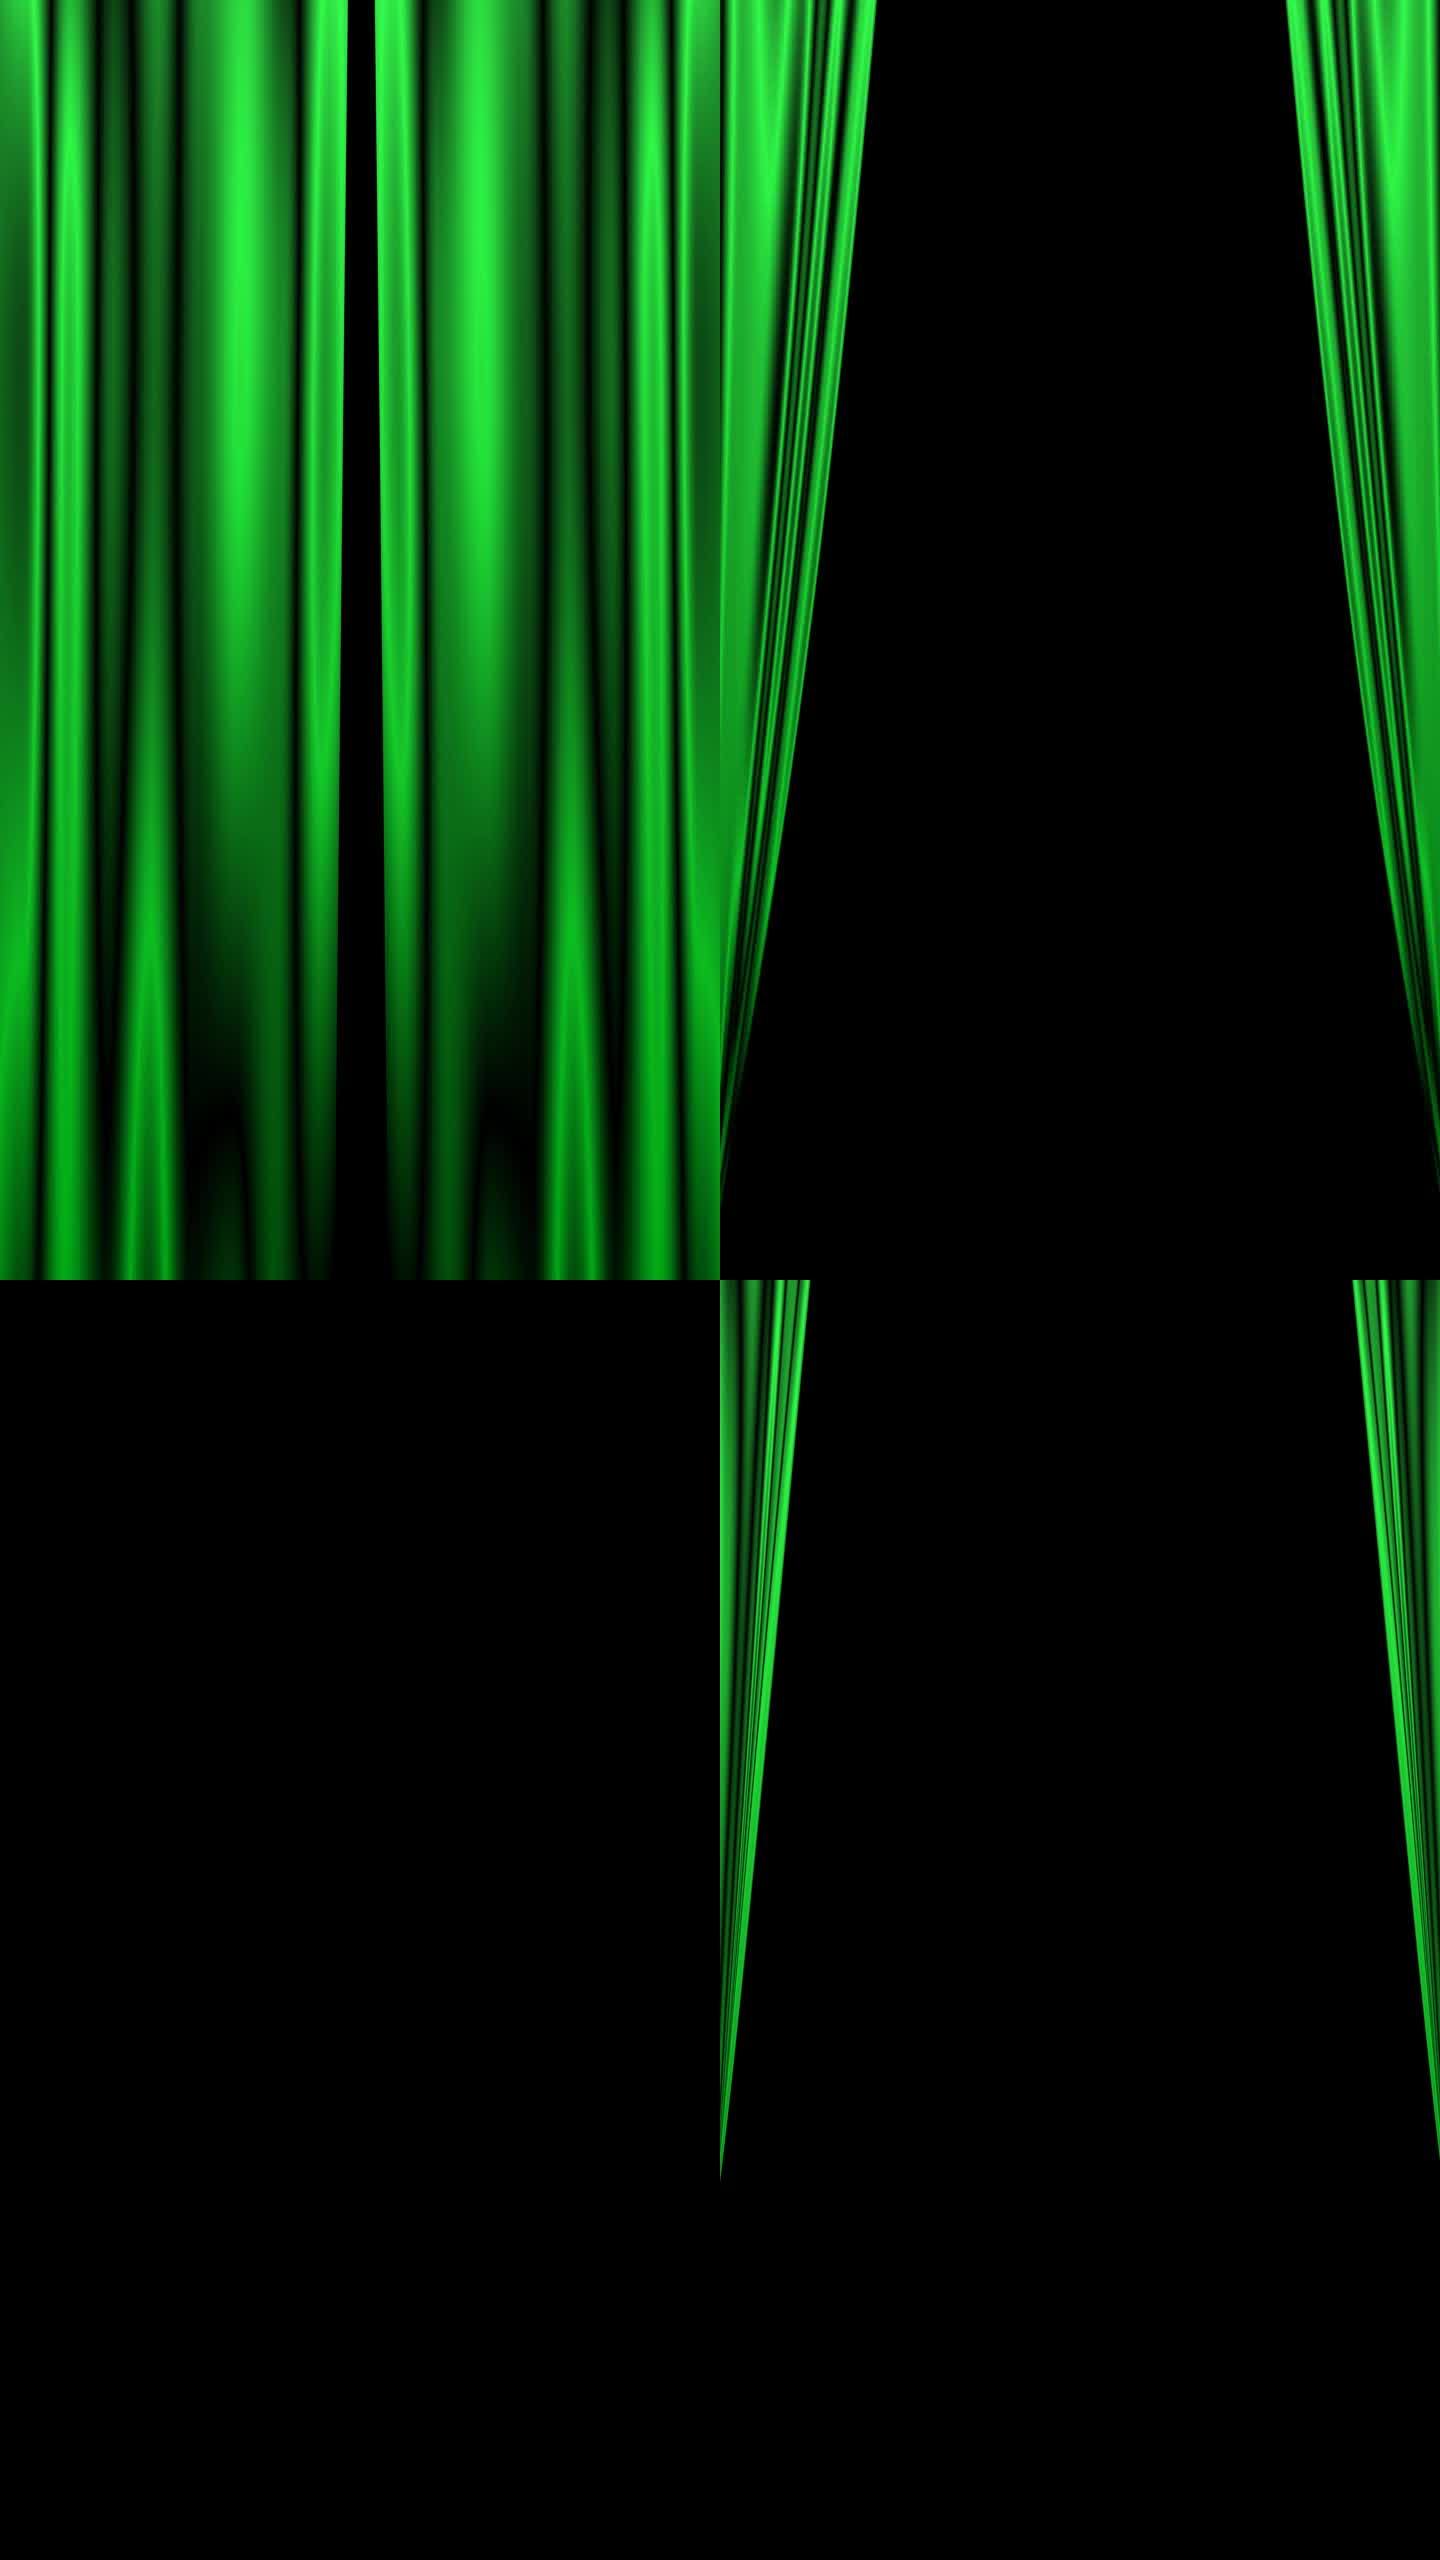 动画素材(透明背景)带有alpha通道的MOV，其中绿色绸缎状的舞台窗帘左右打开